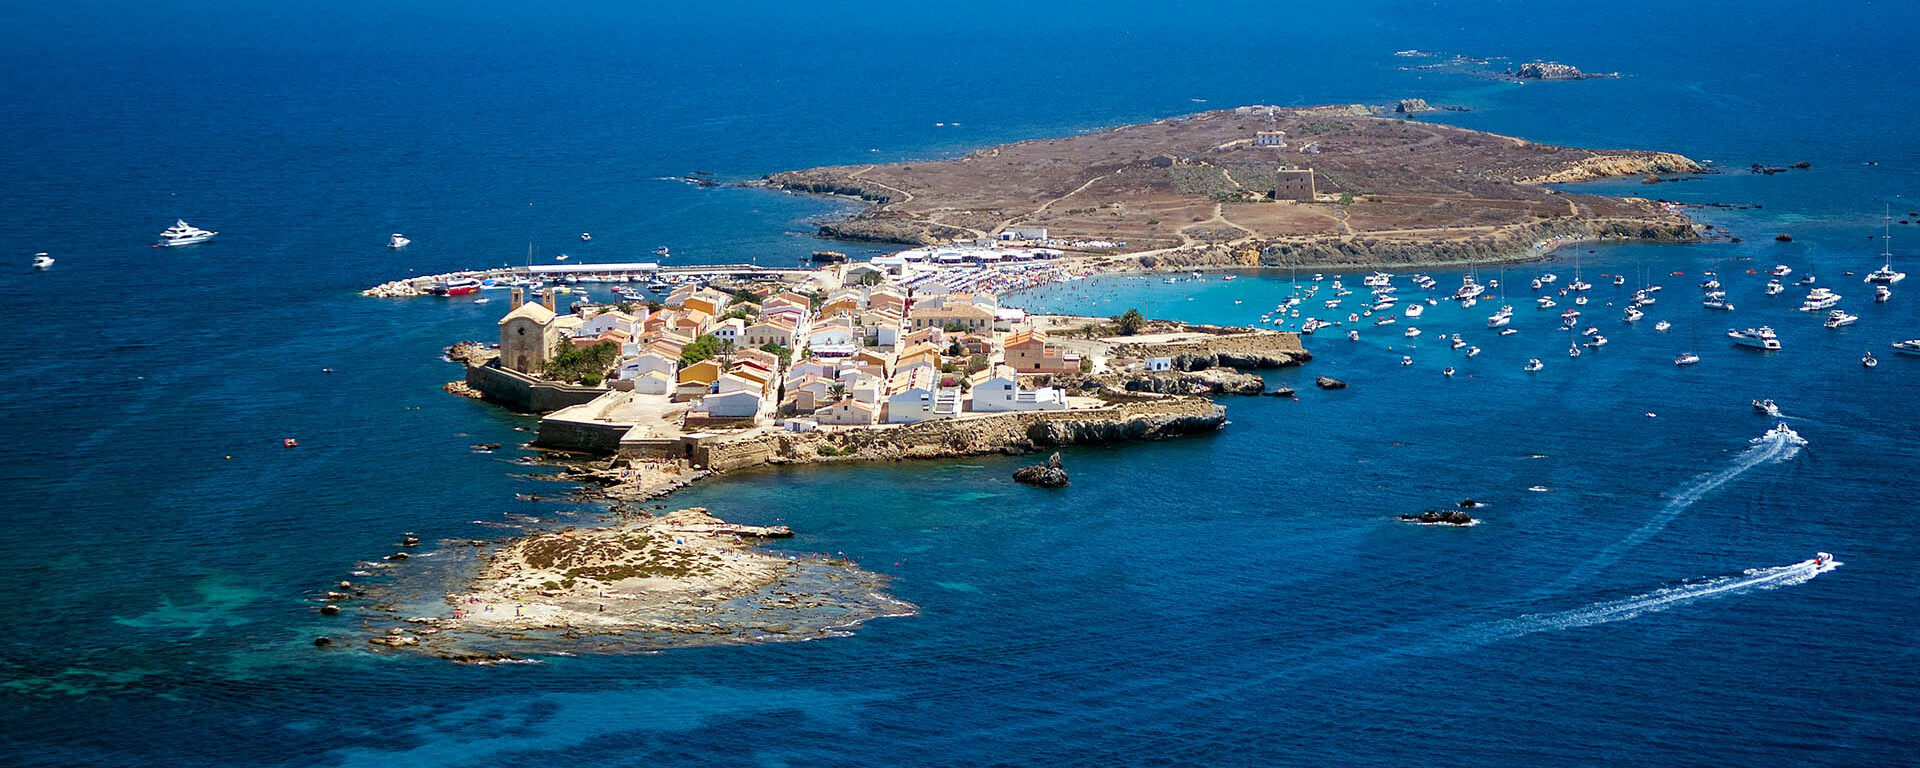 Visita a Isla Tabarca en Catamarán desde Alicante